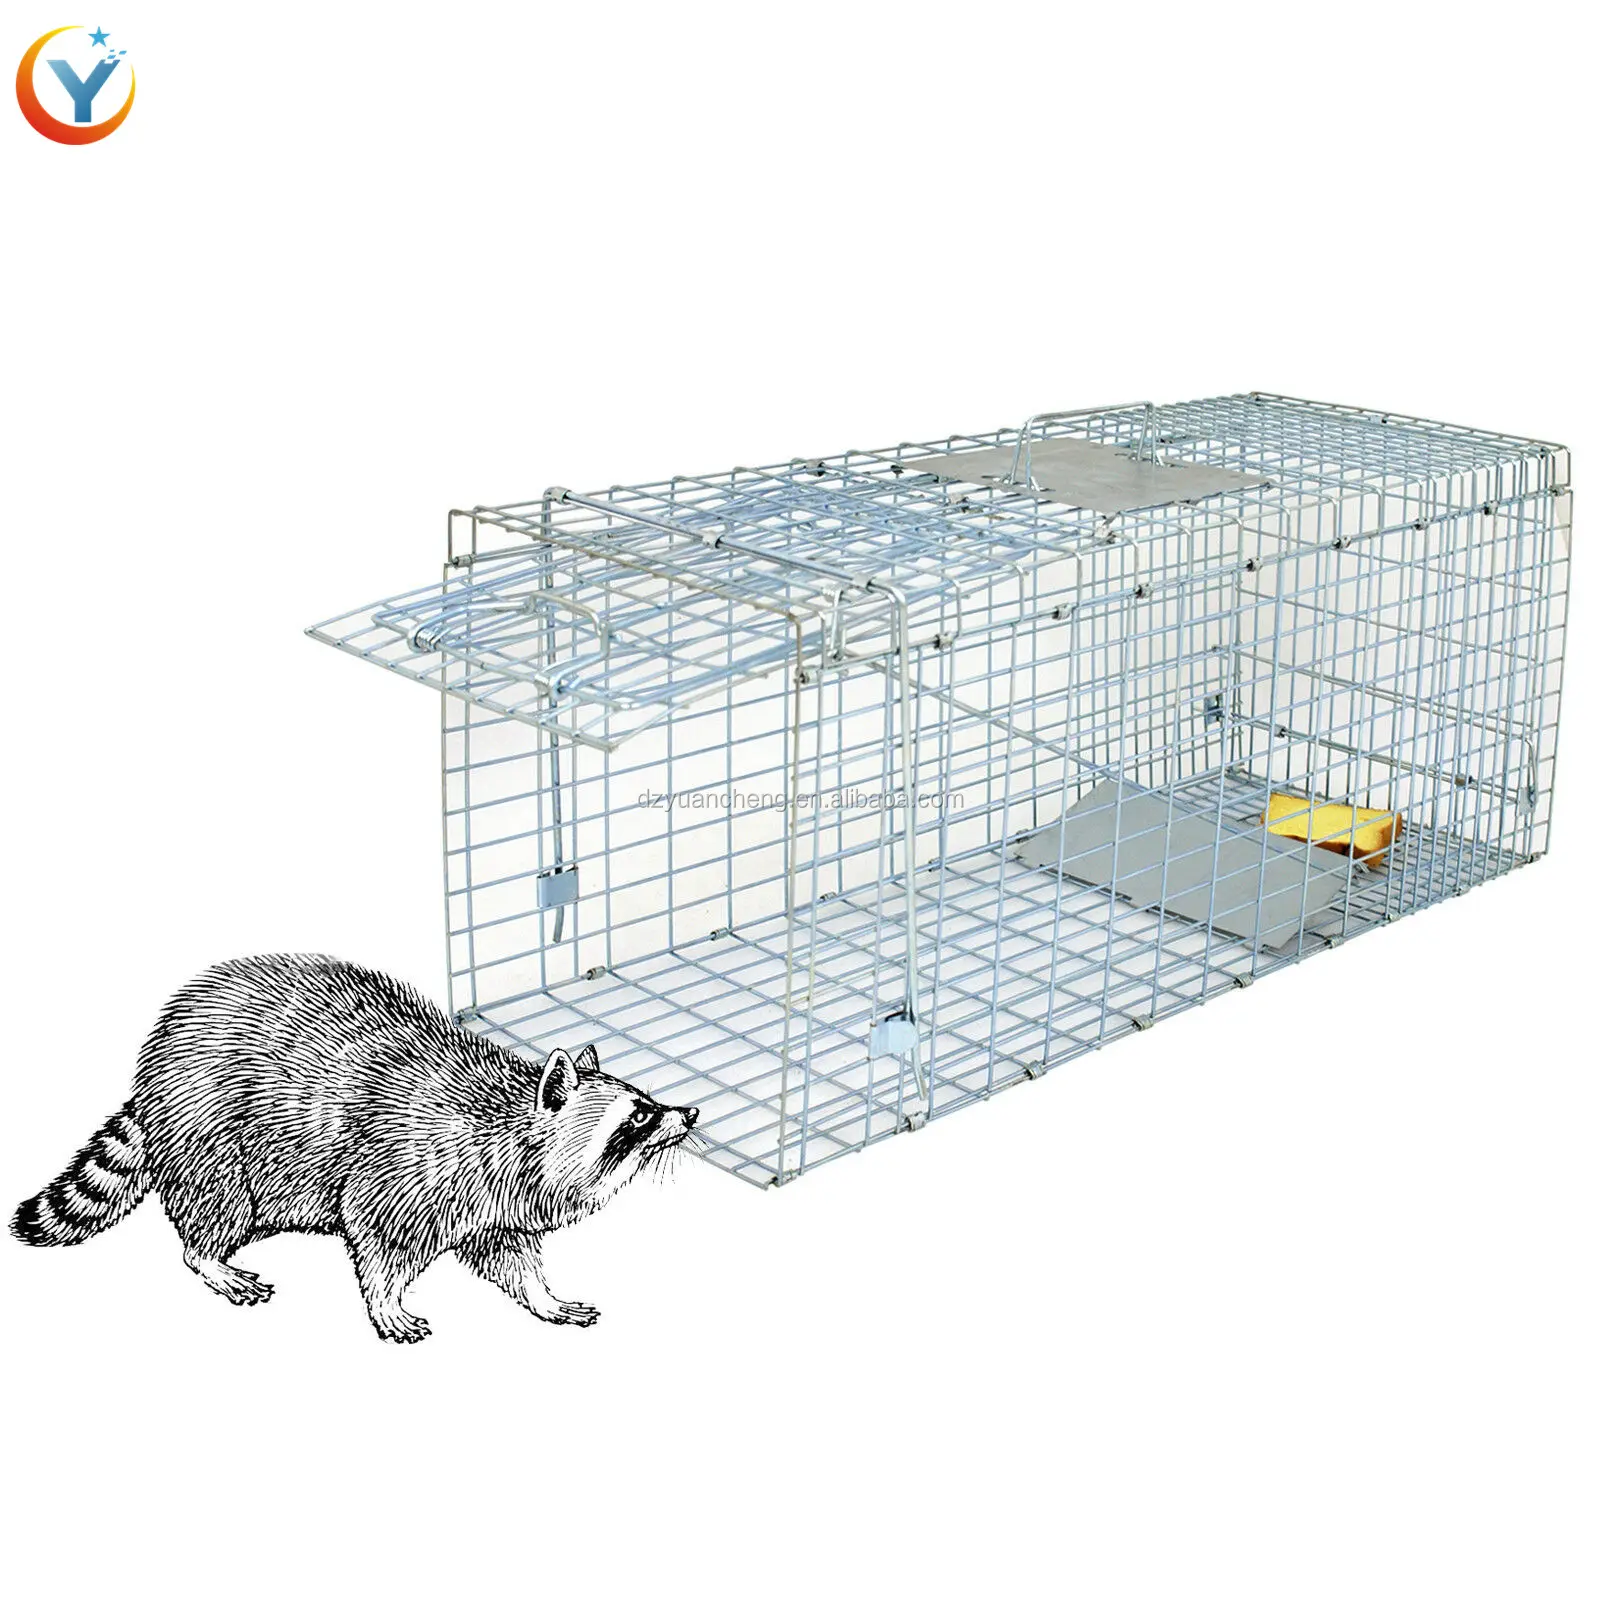 Trampa de jaula de animales en vivo plegada humana para ratas, gatos, conejos, mapones, Martens, zorros, cerdo, remos salvajes, pájaros, palomas fabricante